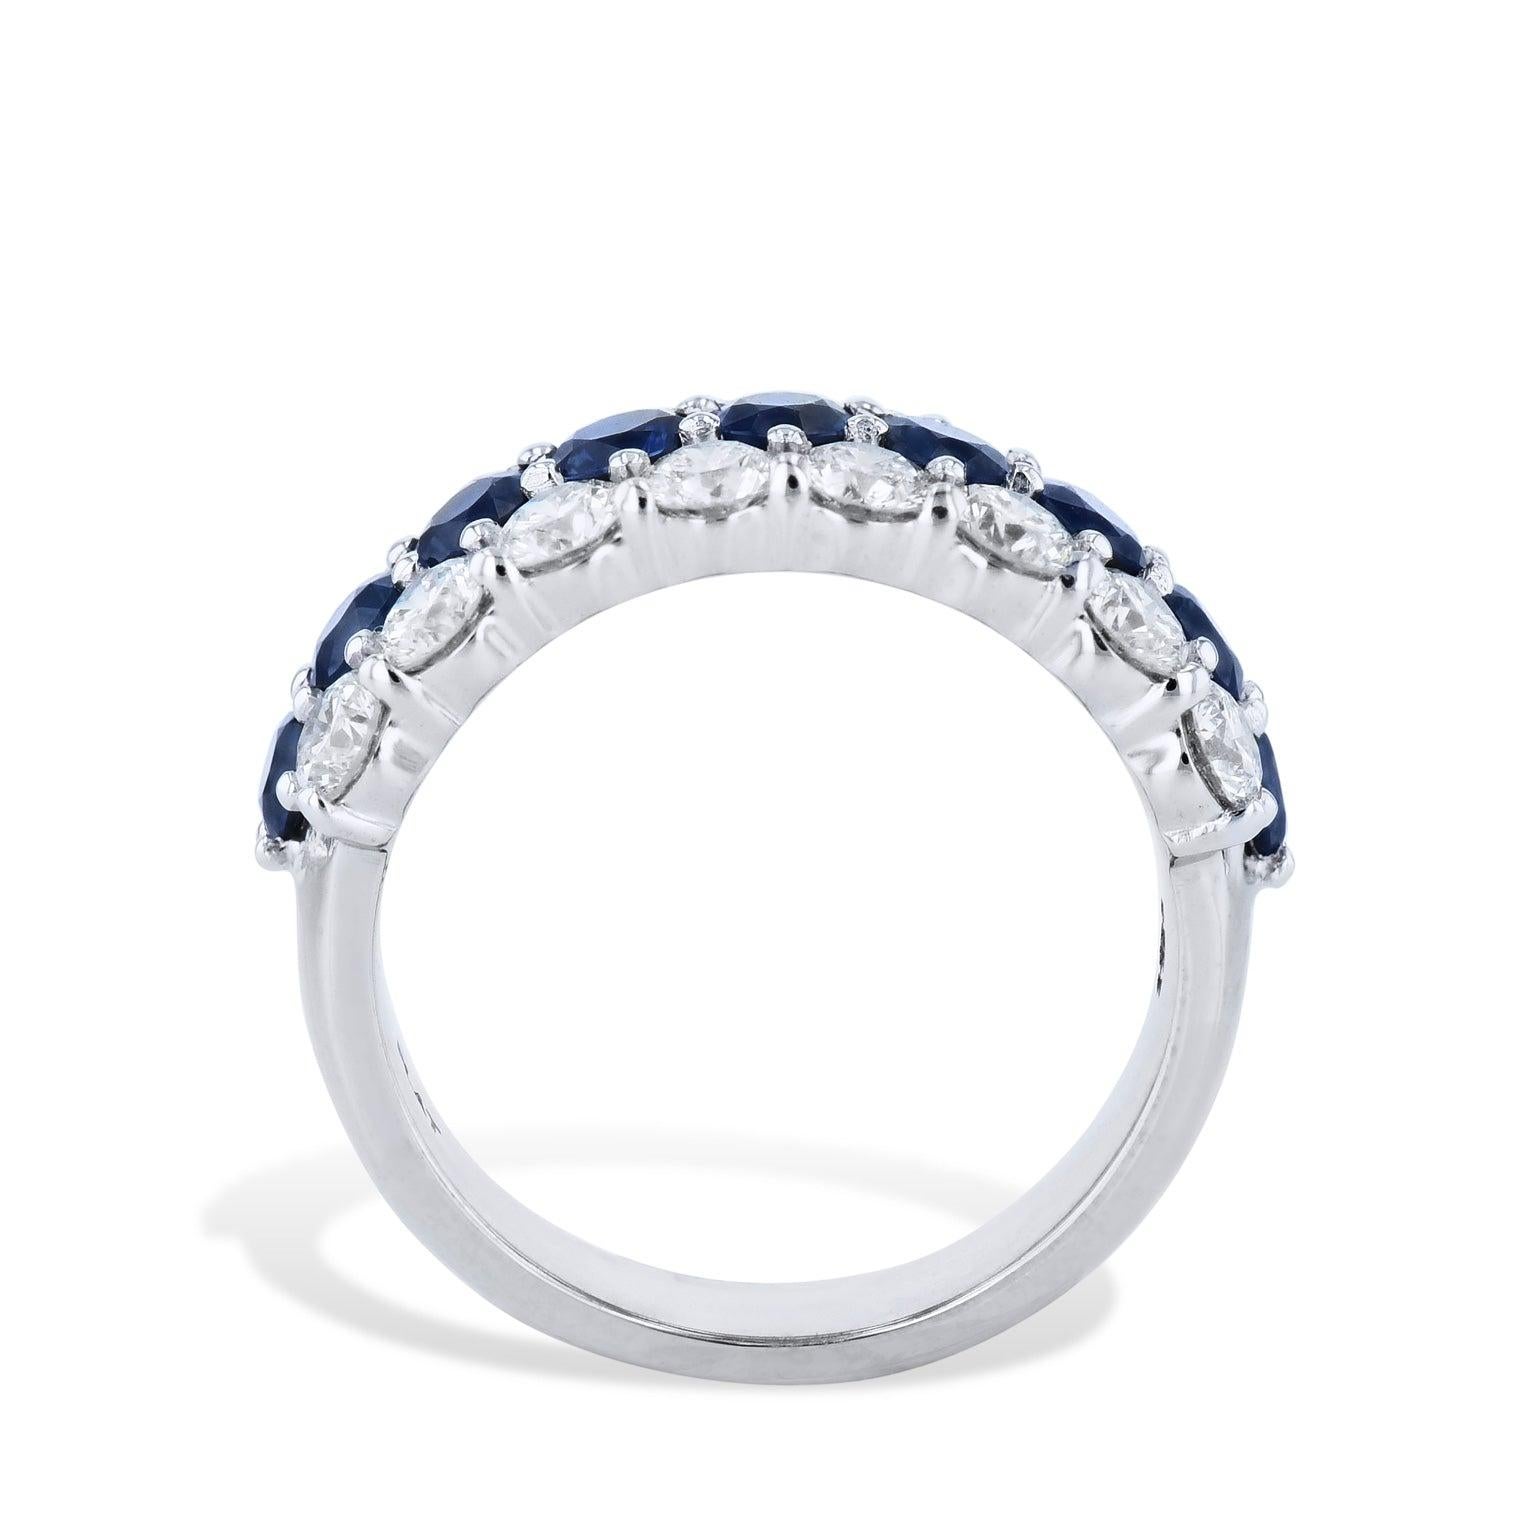 Rehaussez votre style de façon extraordinaire avec ce superbe bracelet à trois rangs de diamants et de saphirs. 
Réalisée en platine brillant, elle présente une magnifique combinaison de diamants et de saphirs ronds pour un éclat